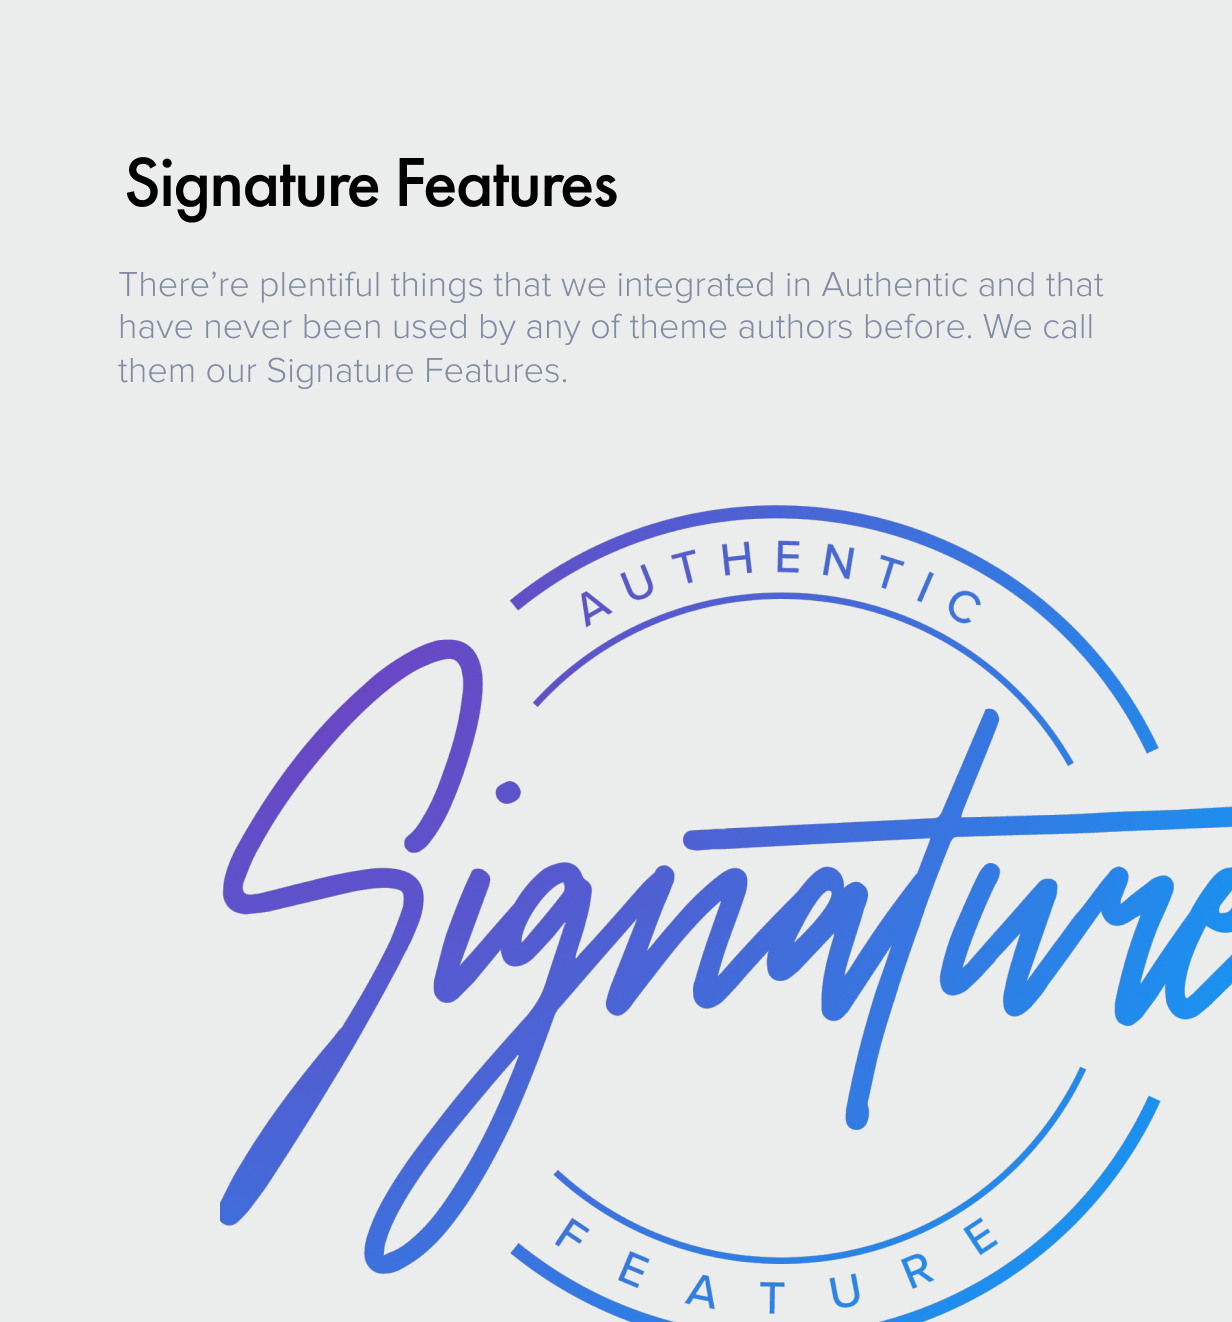 signature - Authentic - Lifestyle Blog & Magazine WordPress Theme